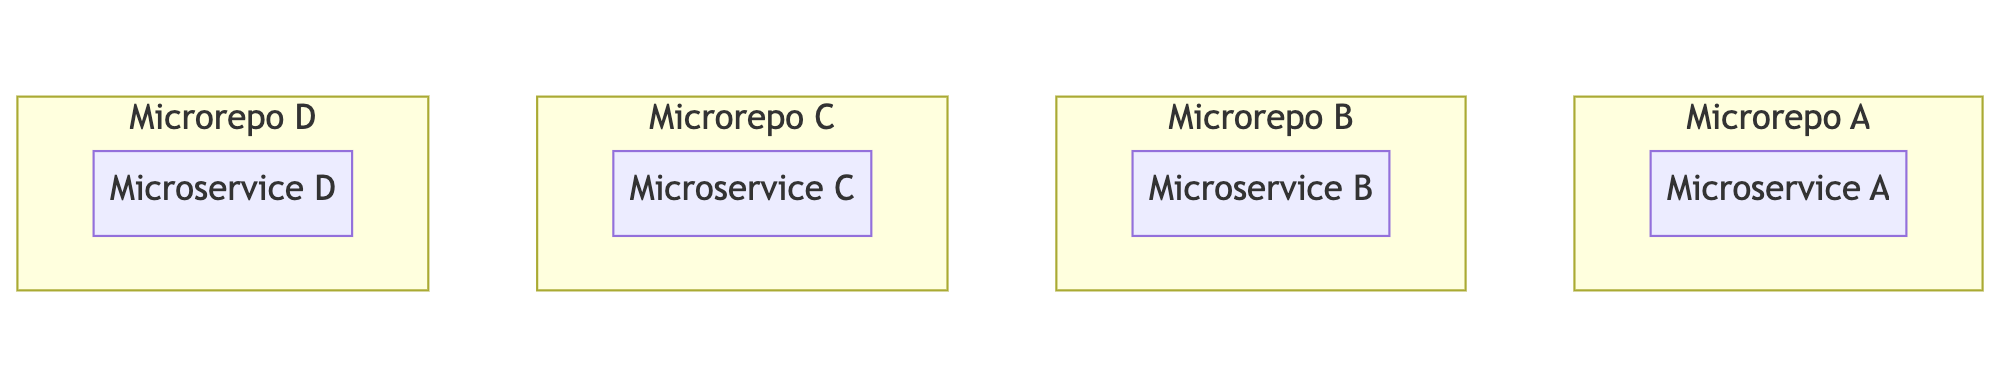 Microrepos example